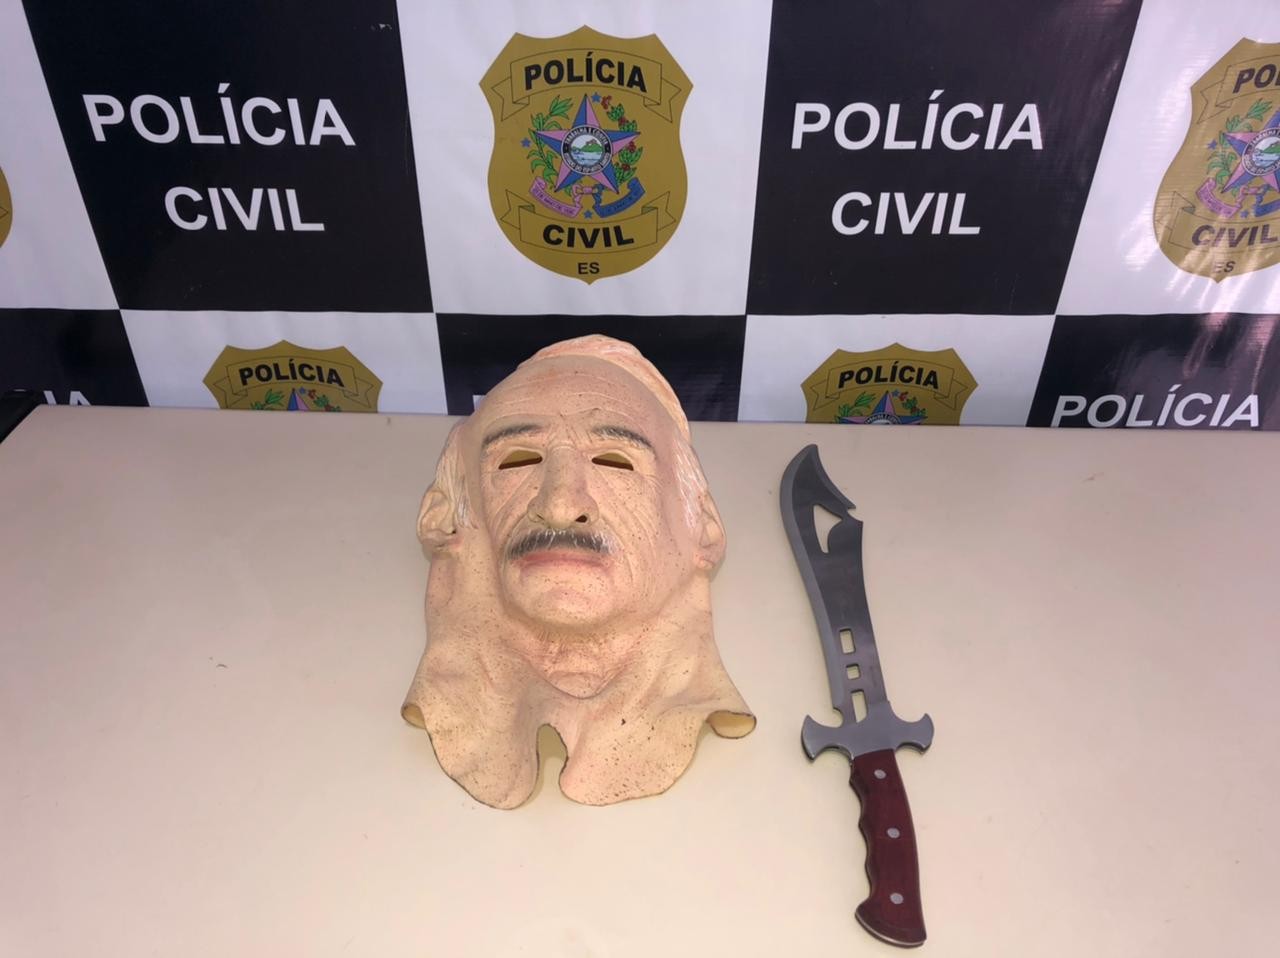 Polícia identifica homem mascarado que usou faca para ameaçar pessoas no ES